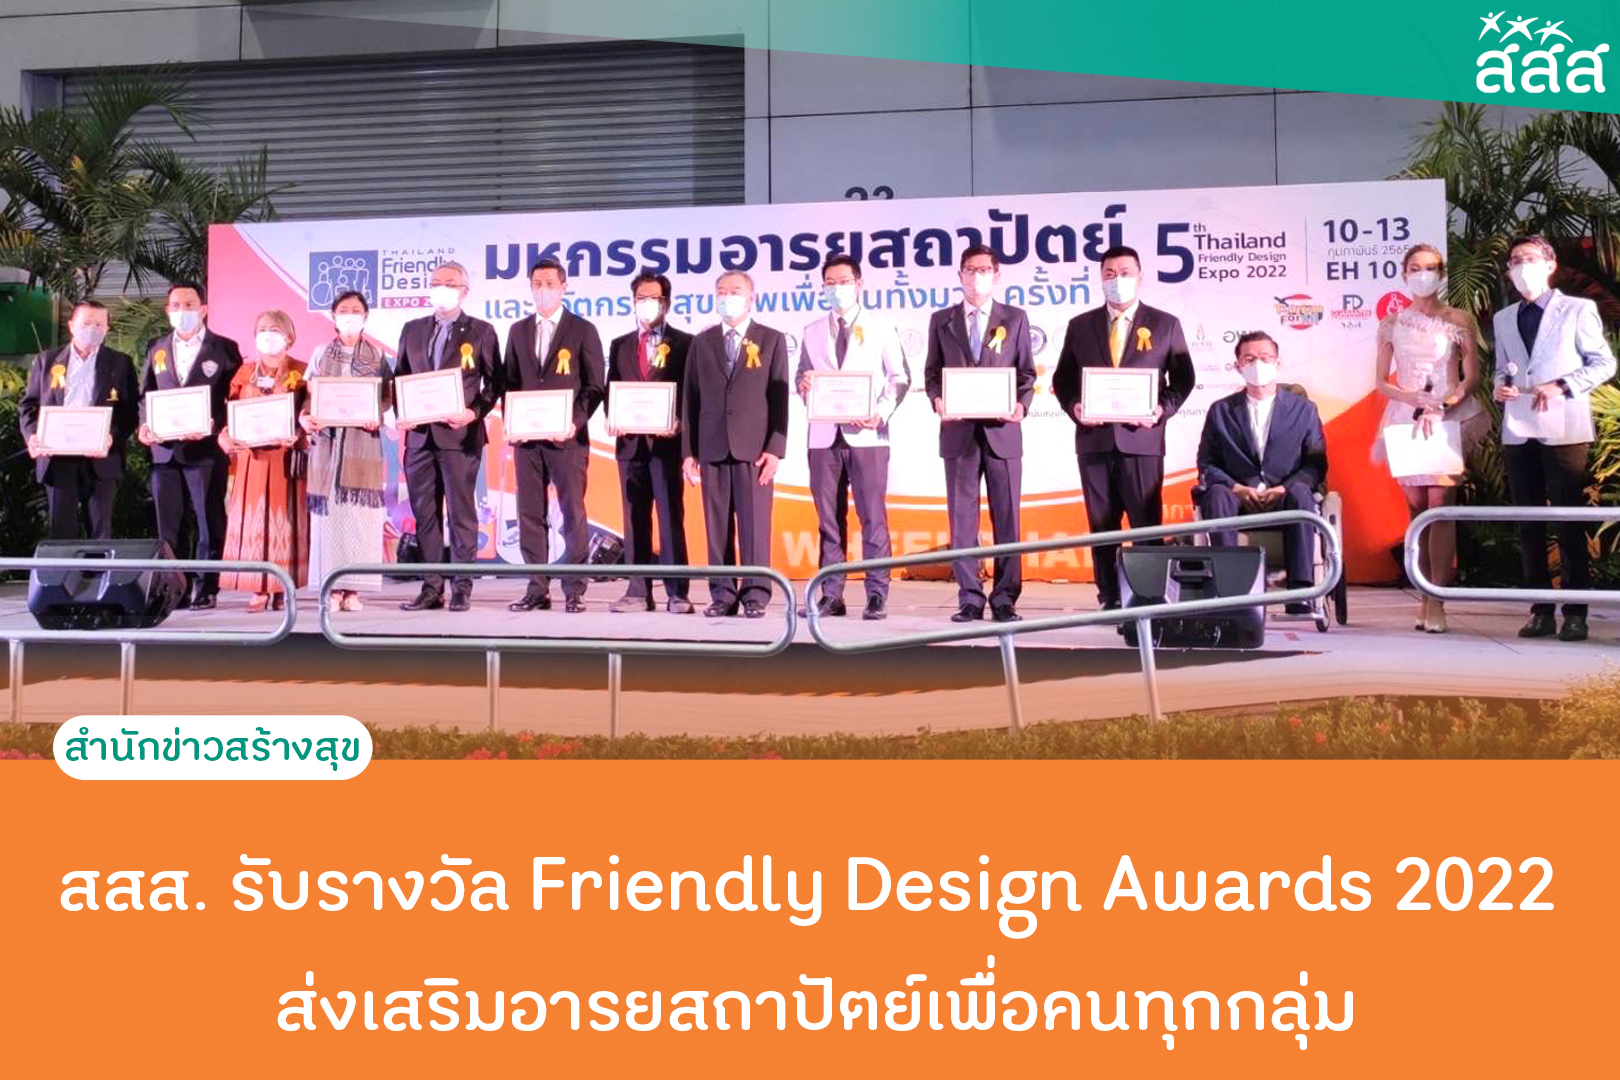 สสส. รับรางวัล Friendly Design Awards 2022 ส่งเสริมอารยสถาปัตย์เพื่อคนทุกกลุ่ม thaihealth